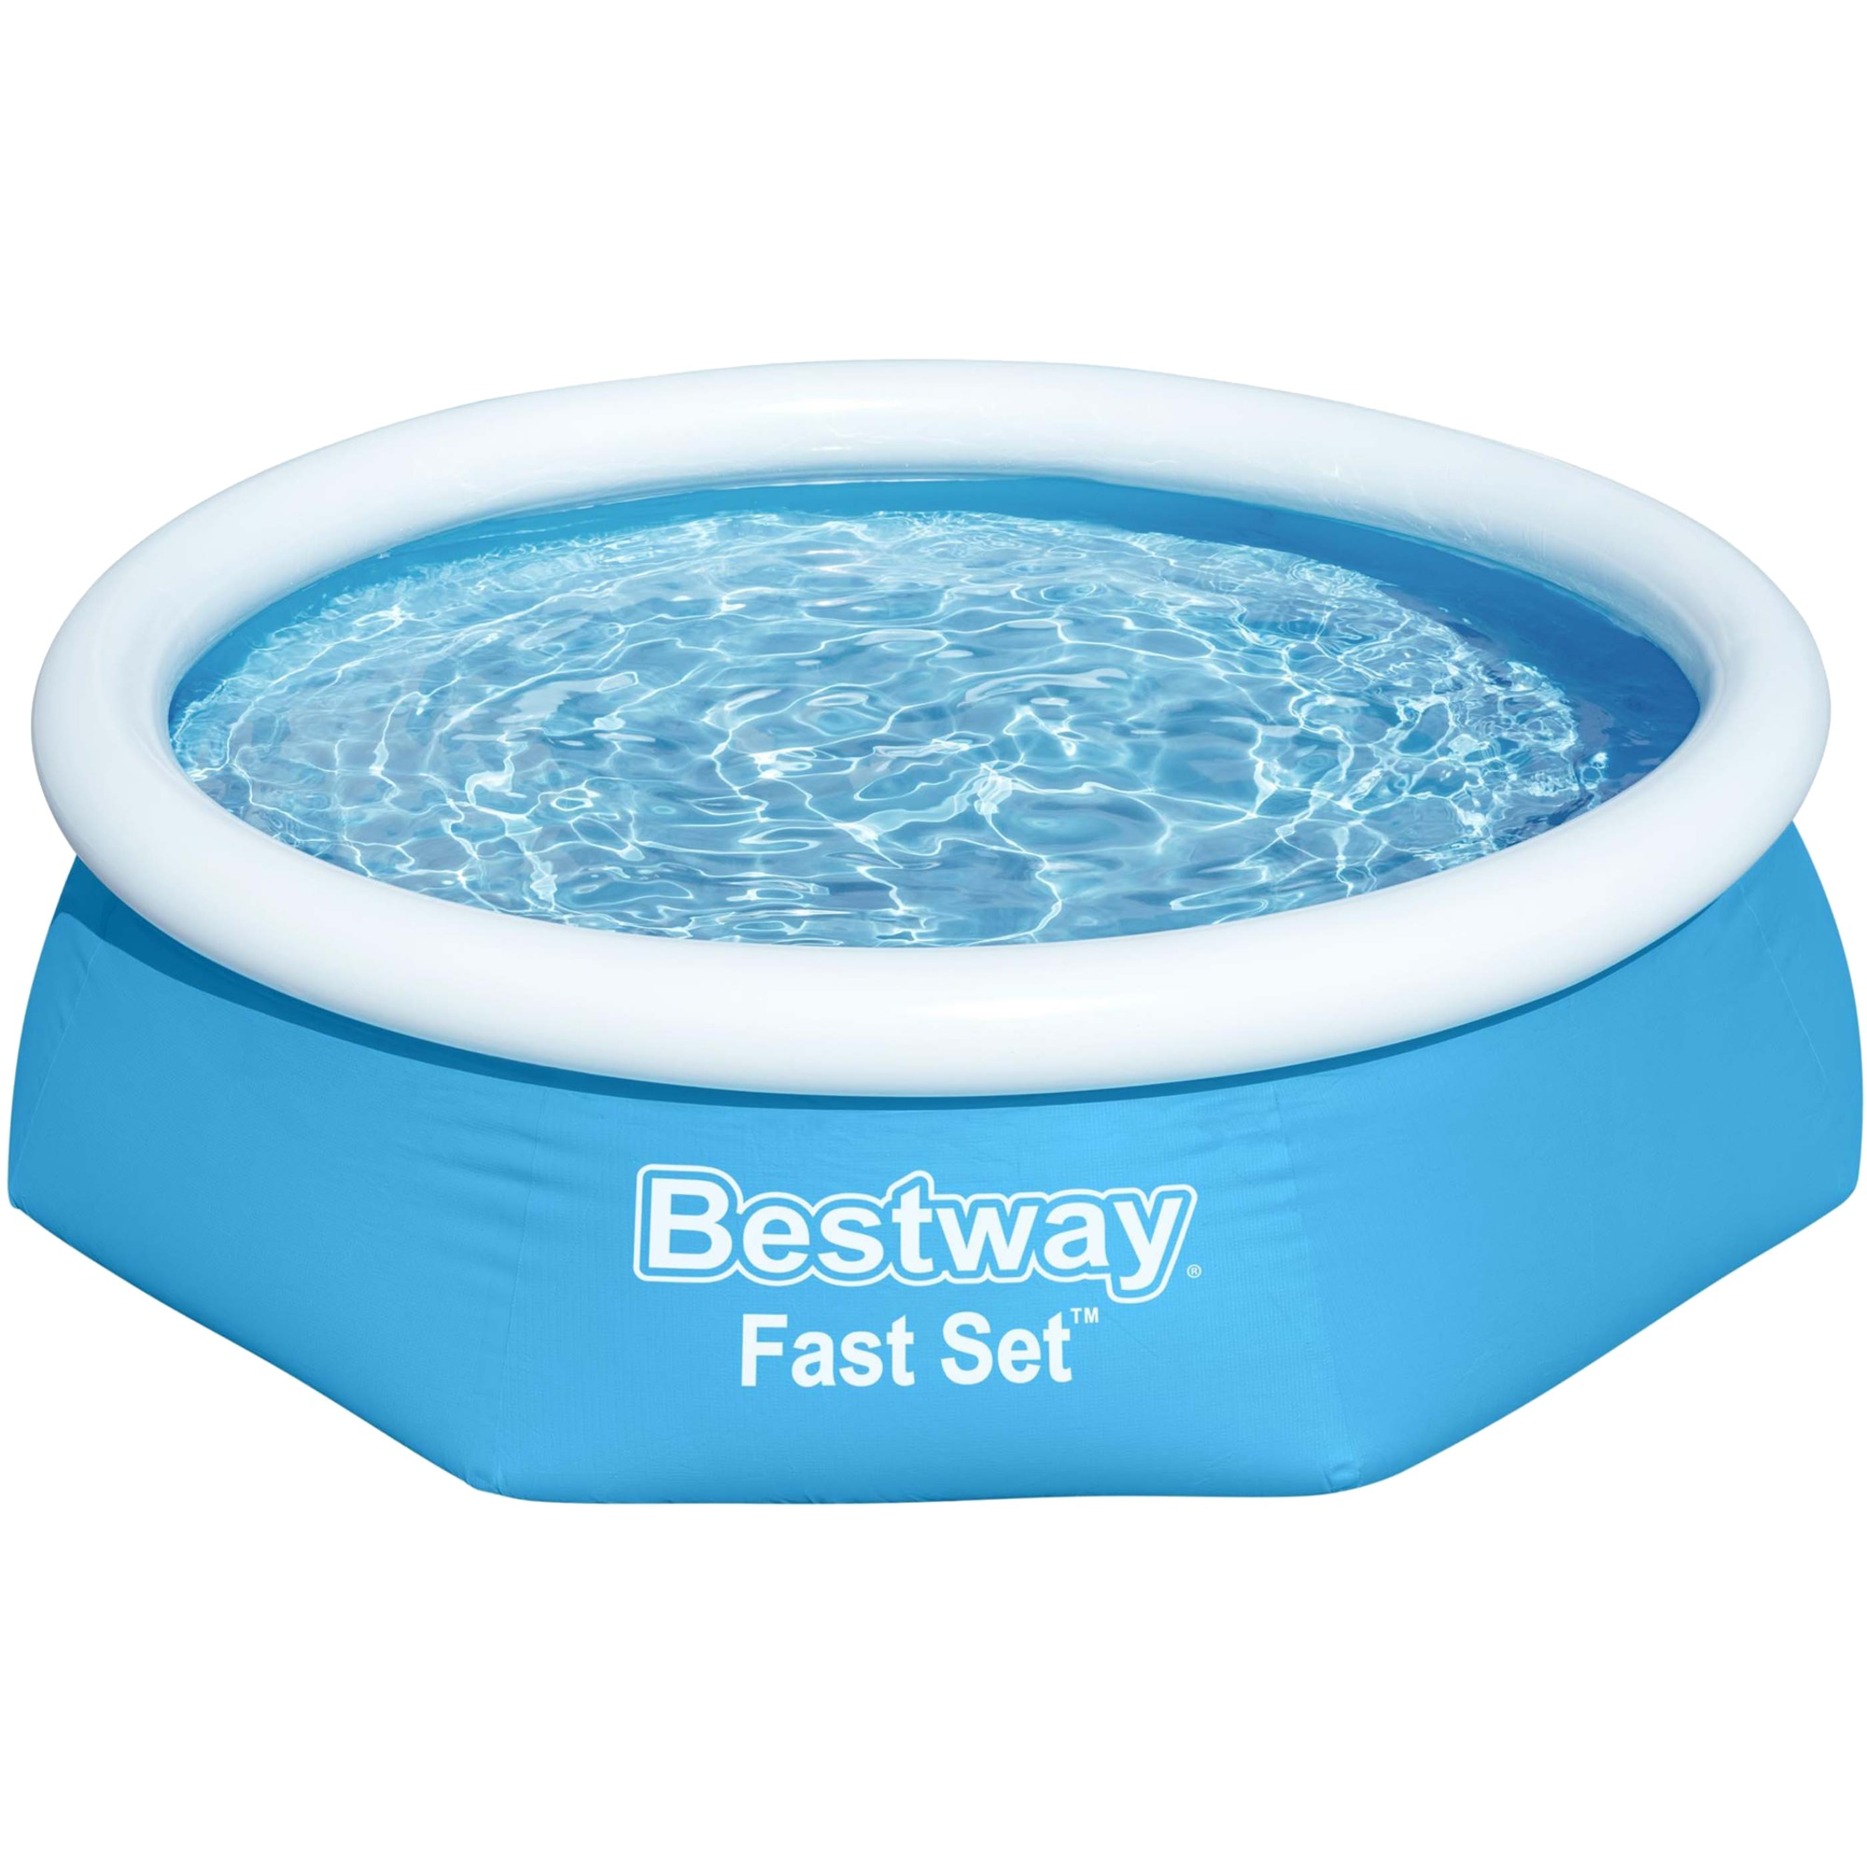 Bestway Fast Set Aufstellpool-Set mit Filterpumpe Ø 244 x 61 cm, blau, rund